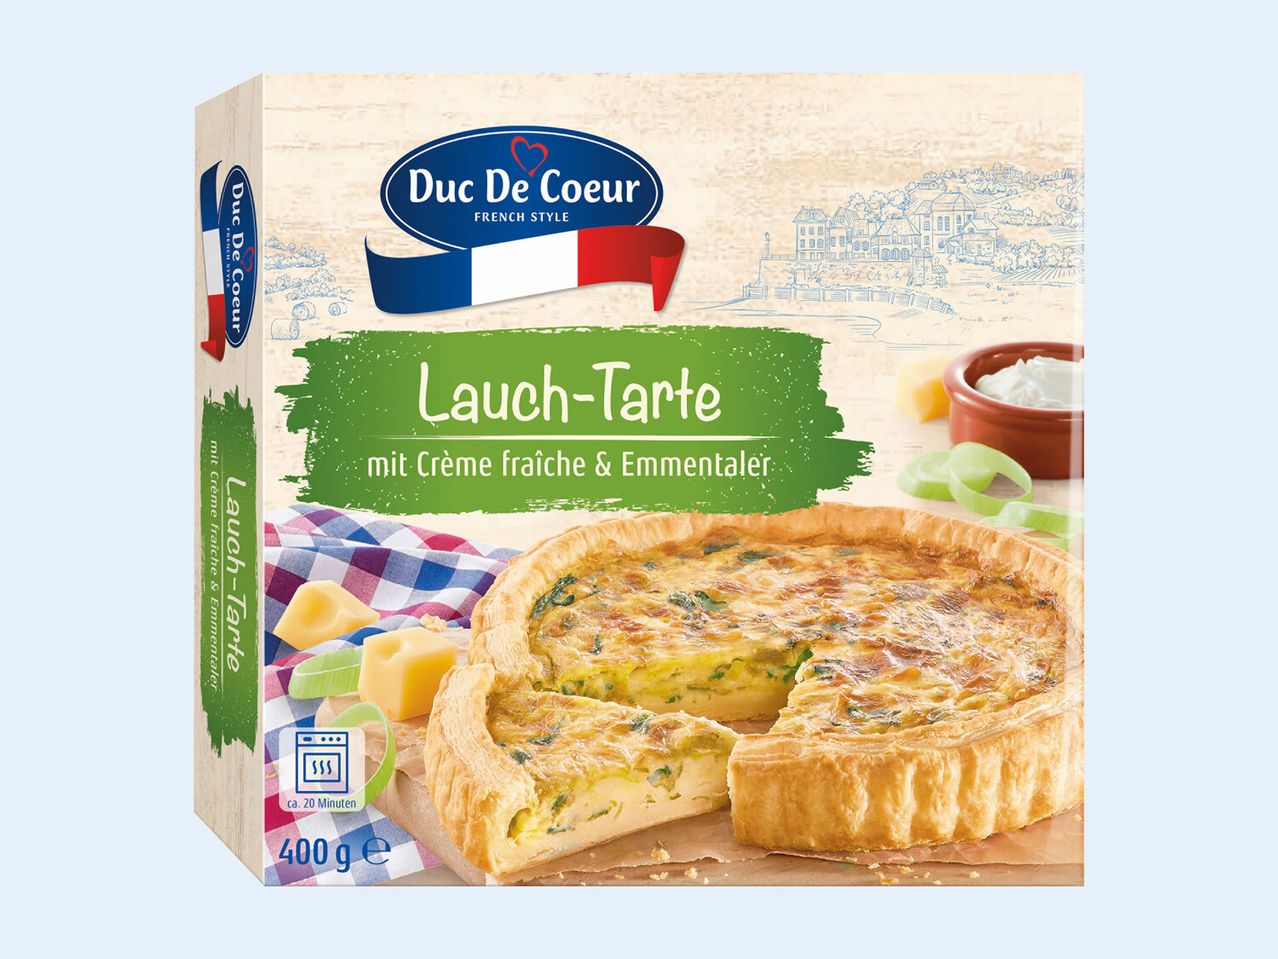 Lauch-Tarte Coeur de Duc